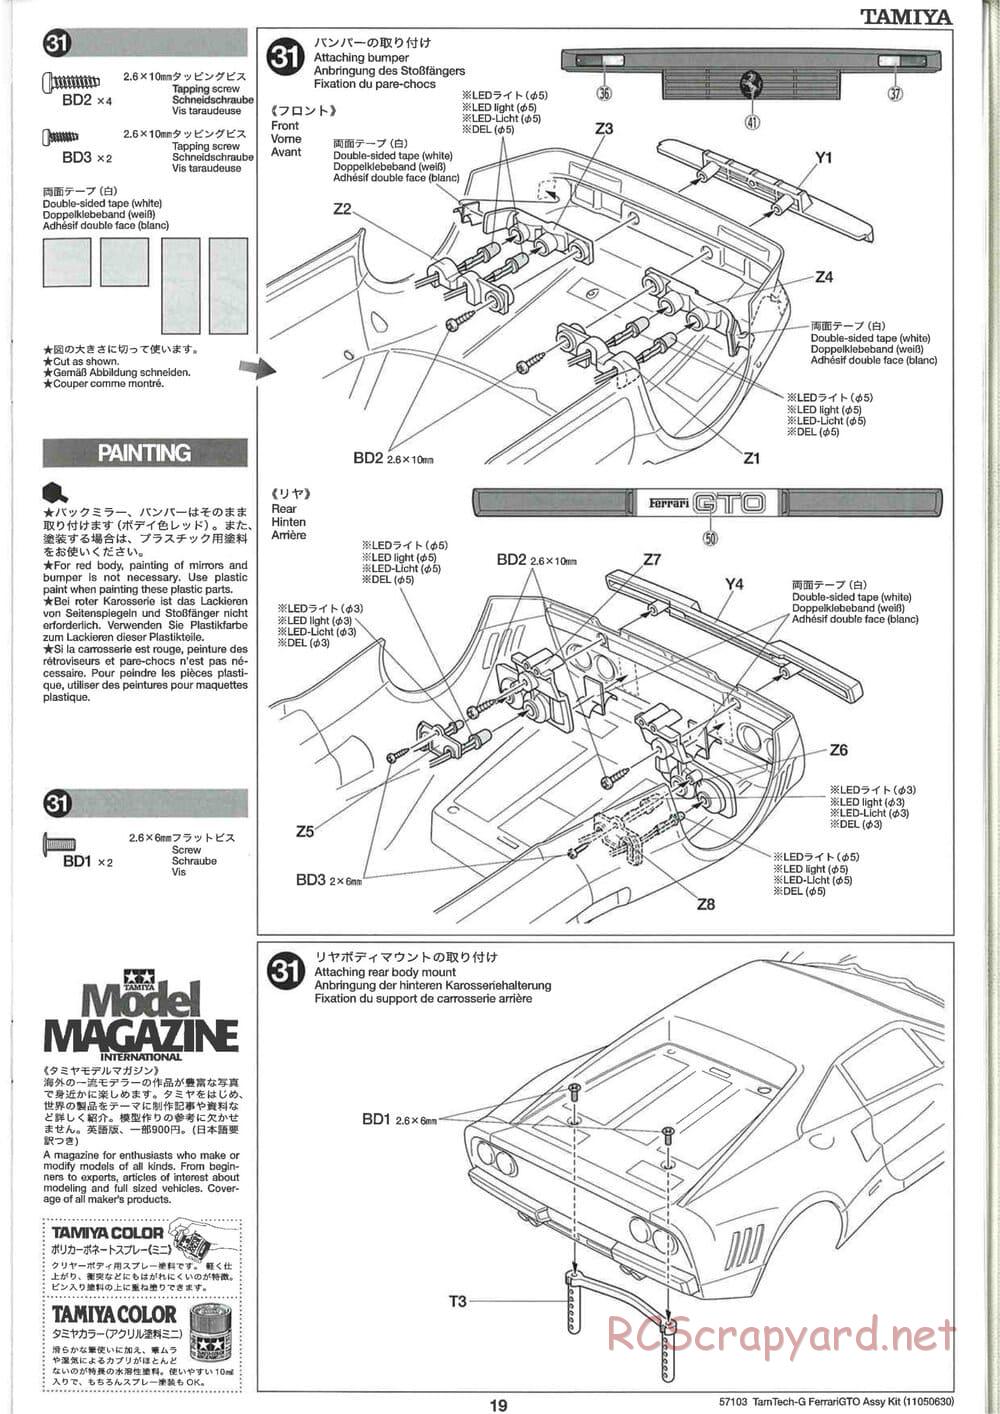 Tamiya - Ferrari 288 GTO - GT-01 Chassis - Manual - Page 19